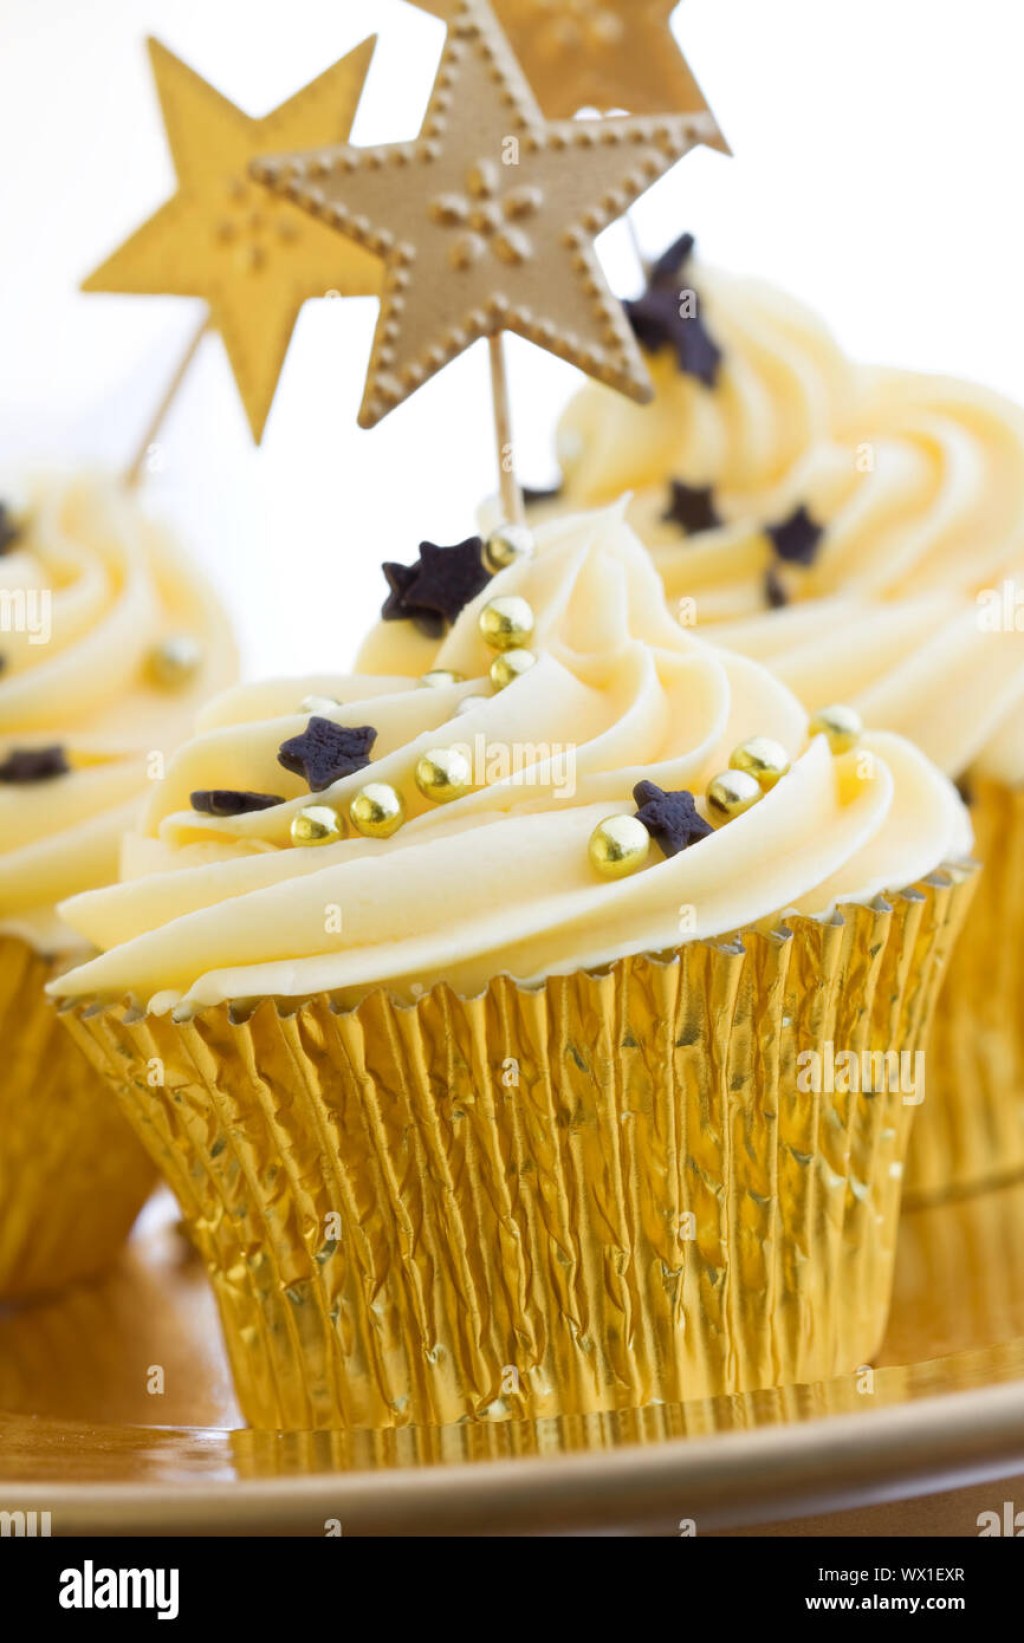 Picture of: Cupcakes dekoriert mit Schokolade Sterne und golden Dragees